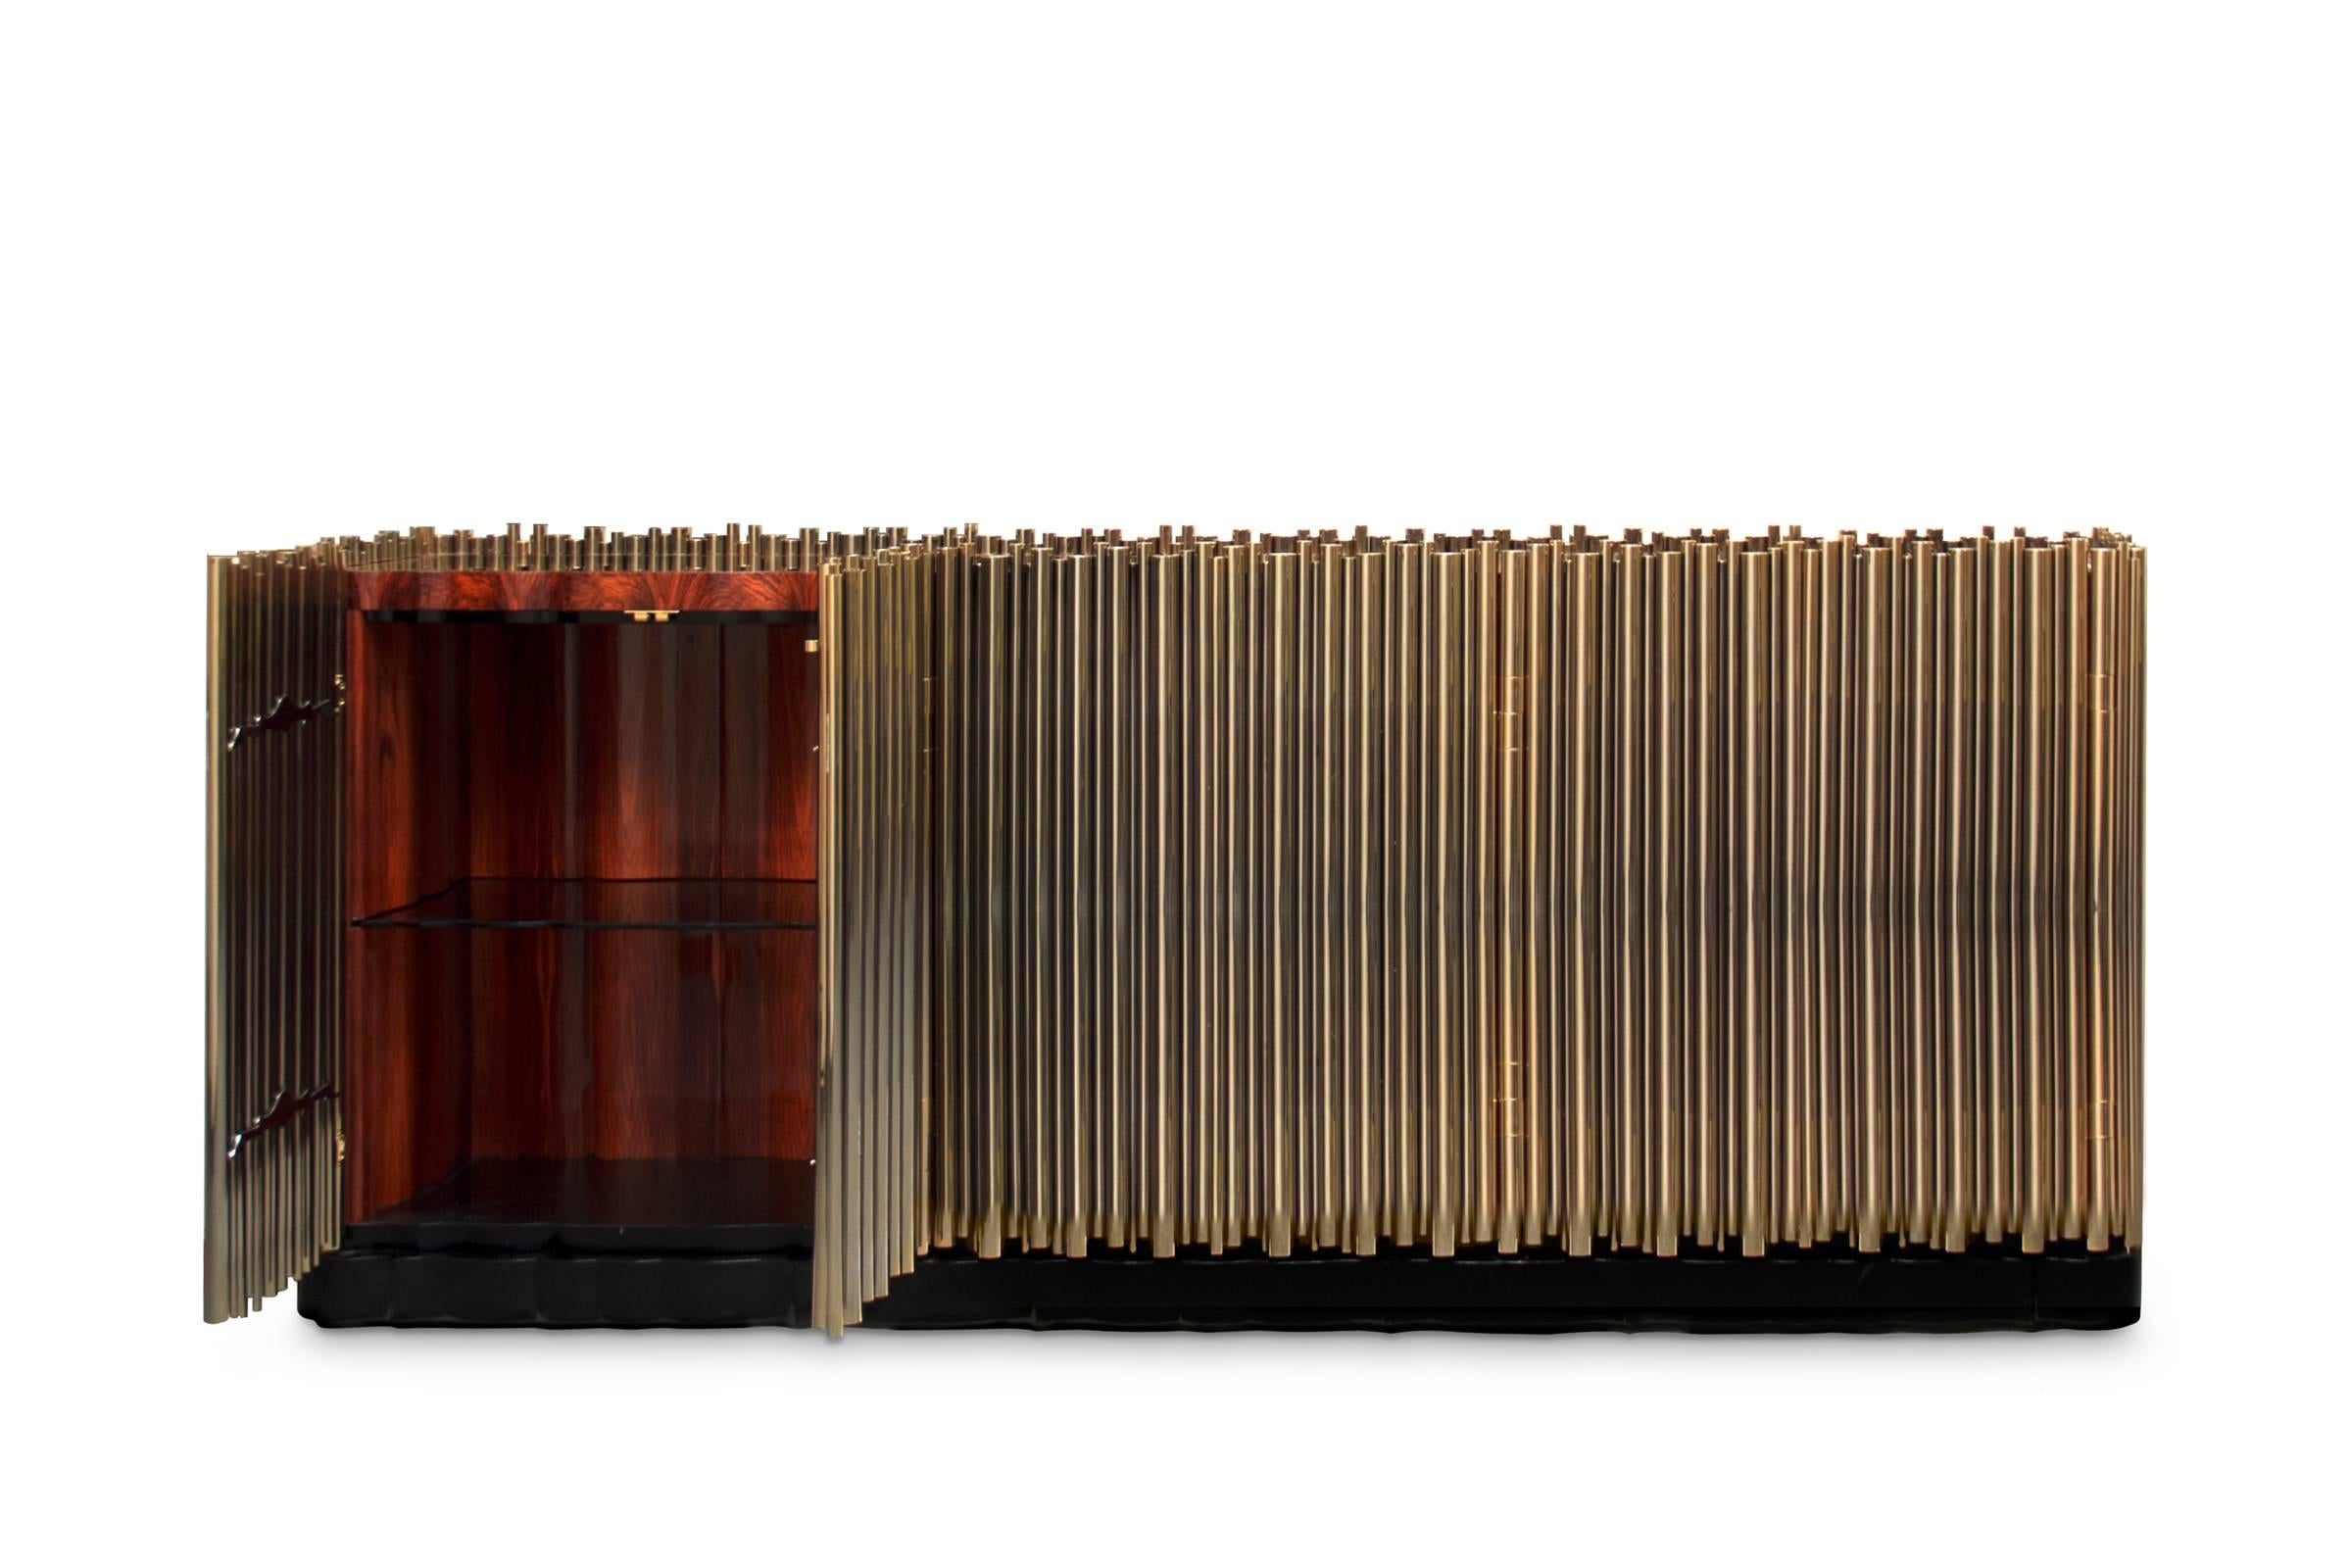 Sideboard Messingrohre in polierten Messingrohren
die eine exotische Holzstruktur umhüllen und so eine
clevere Gegenüberstellung. Außergewöhnliches Stück.
L168xT45xH95cm, Preis: 87900,00€.
L232xT45xH95cm, Preis: 112900,00€.
